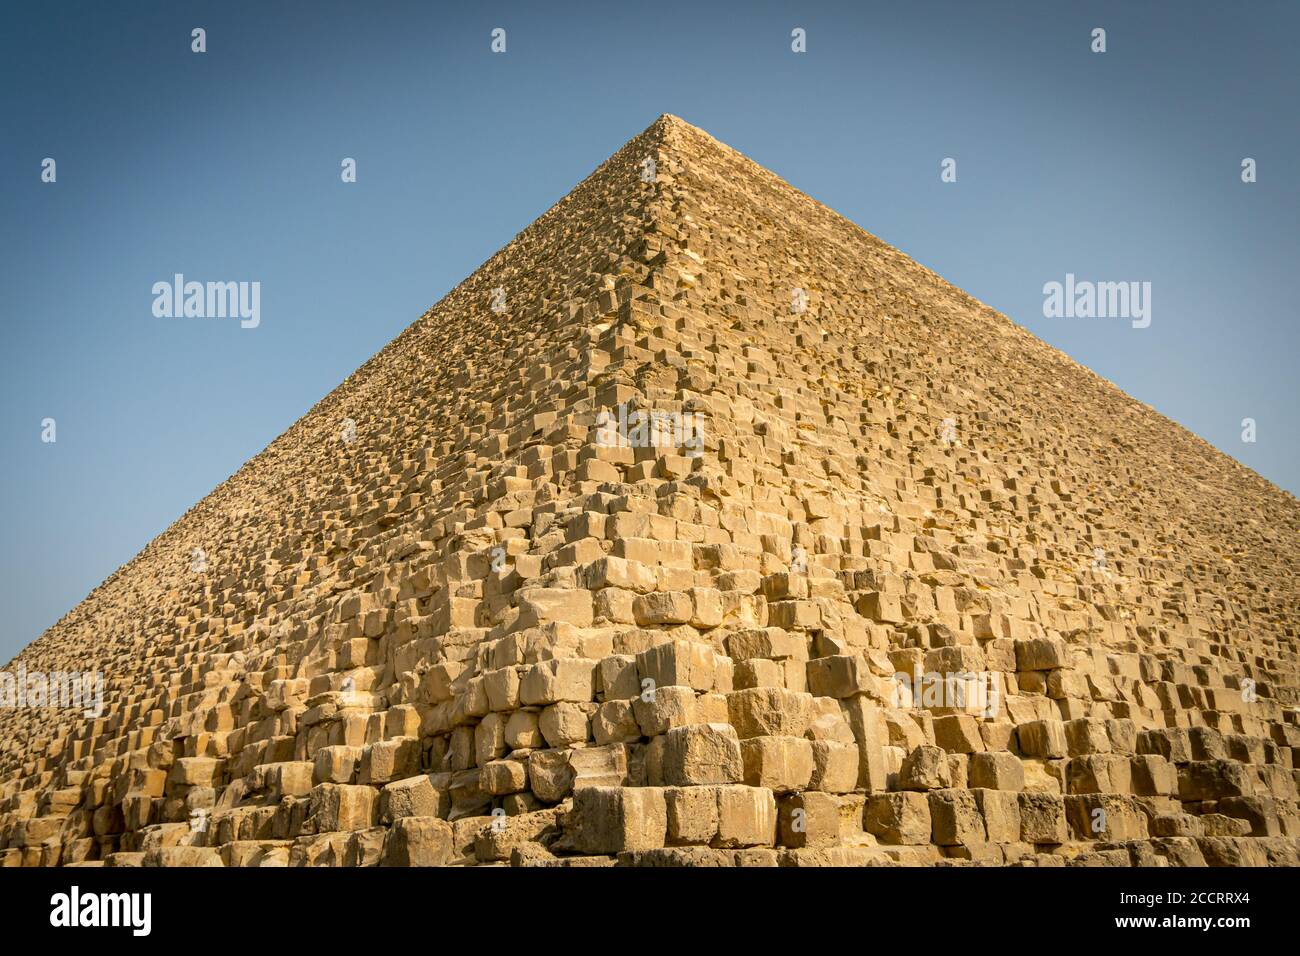 Pyramides de Gizeh. Le Caire. Égypte. Banque D'Images